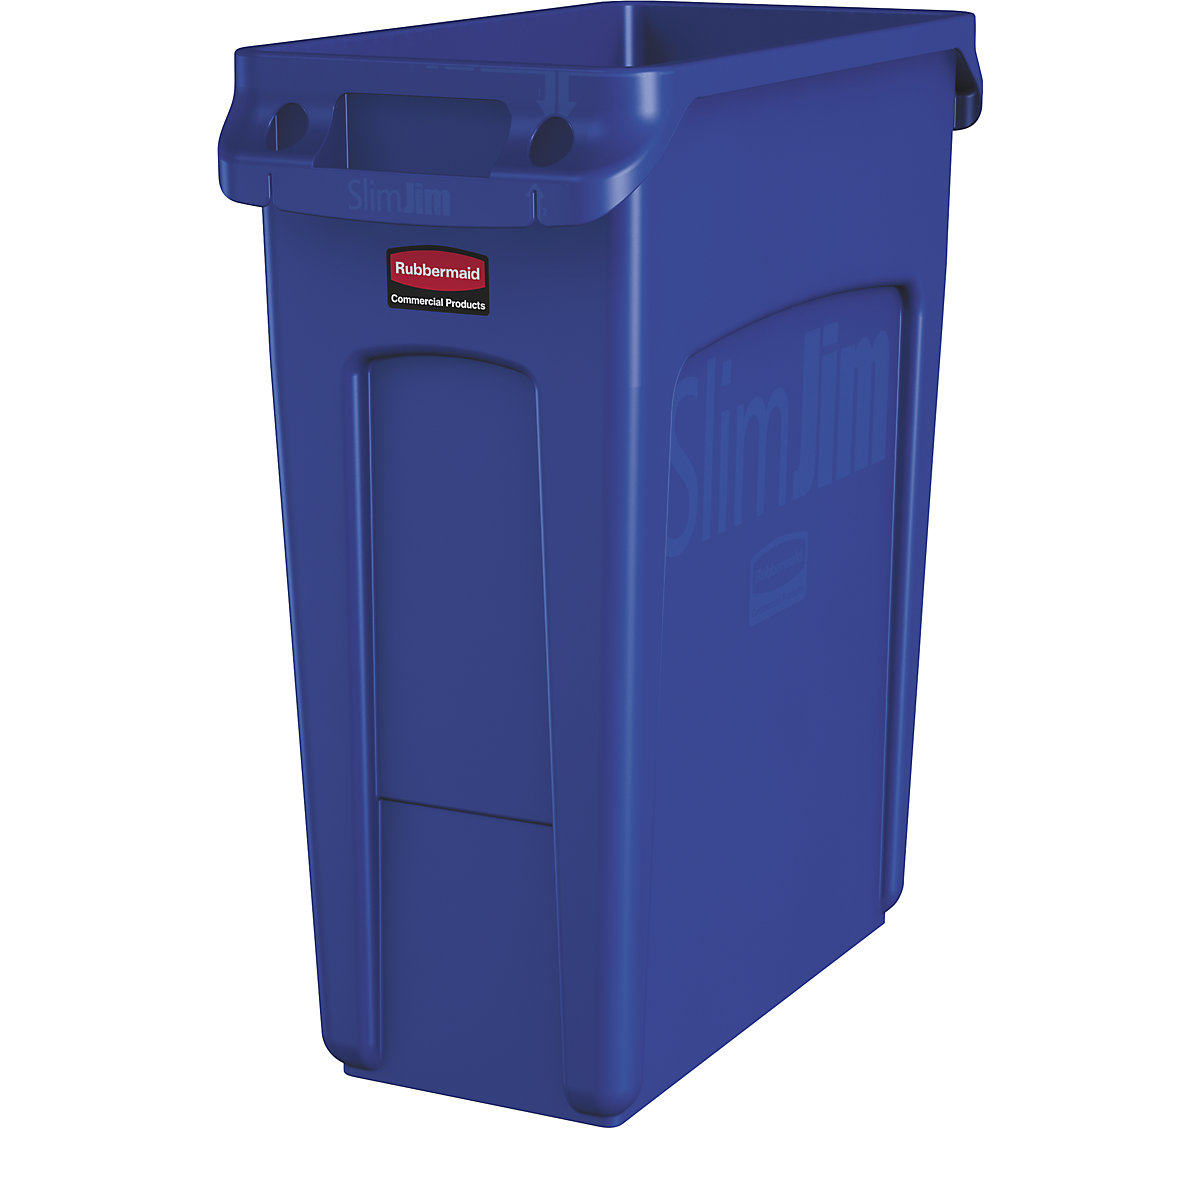 Coletor de materiais recicláveis/balde do lixo SLIM JIM® – Rubbermaid, volume 60 l, com canais de ventilação, azul-11